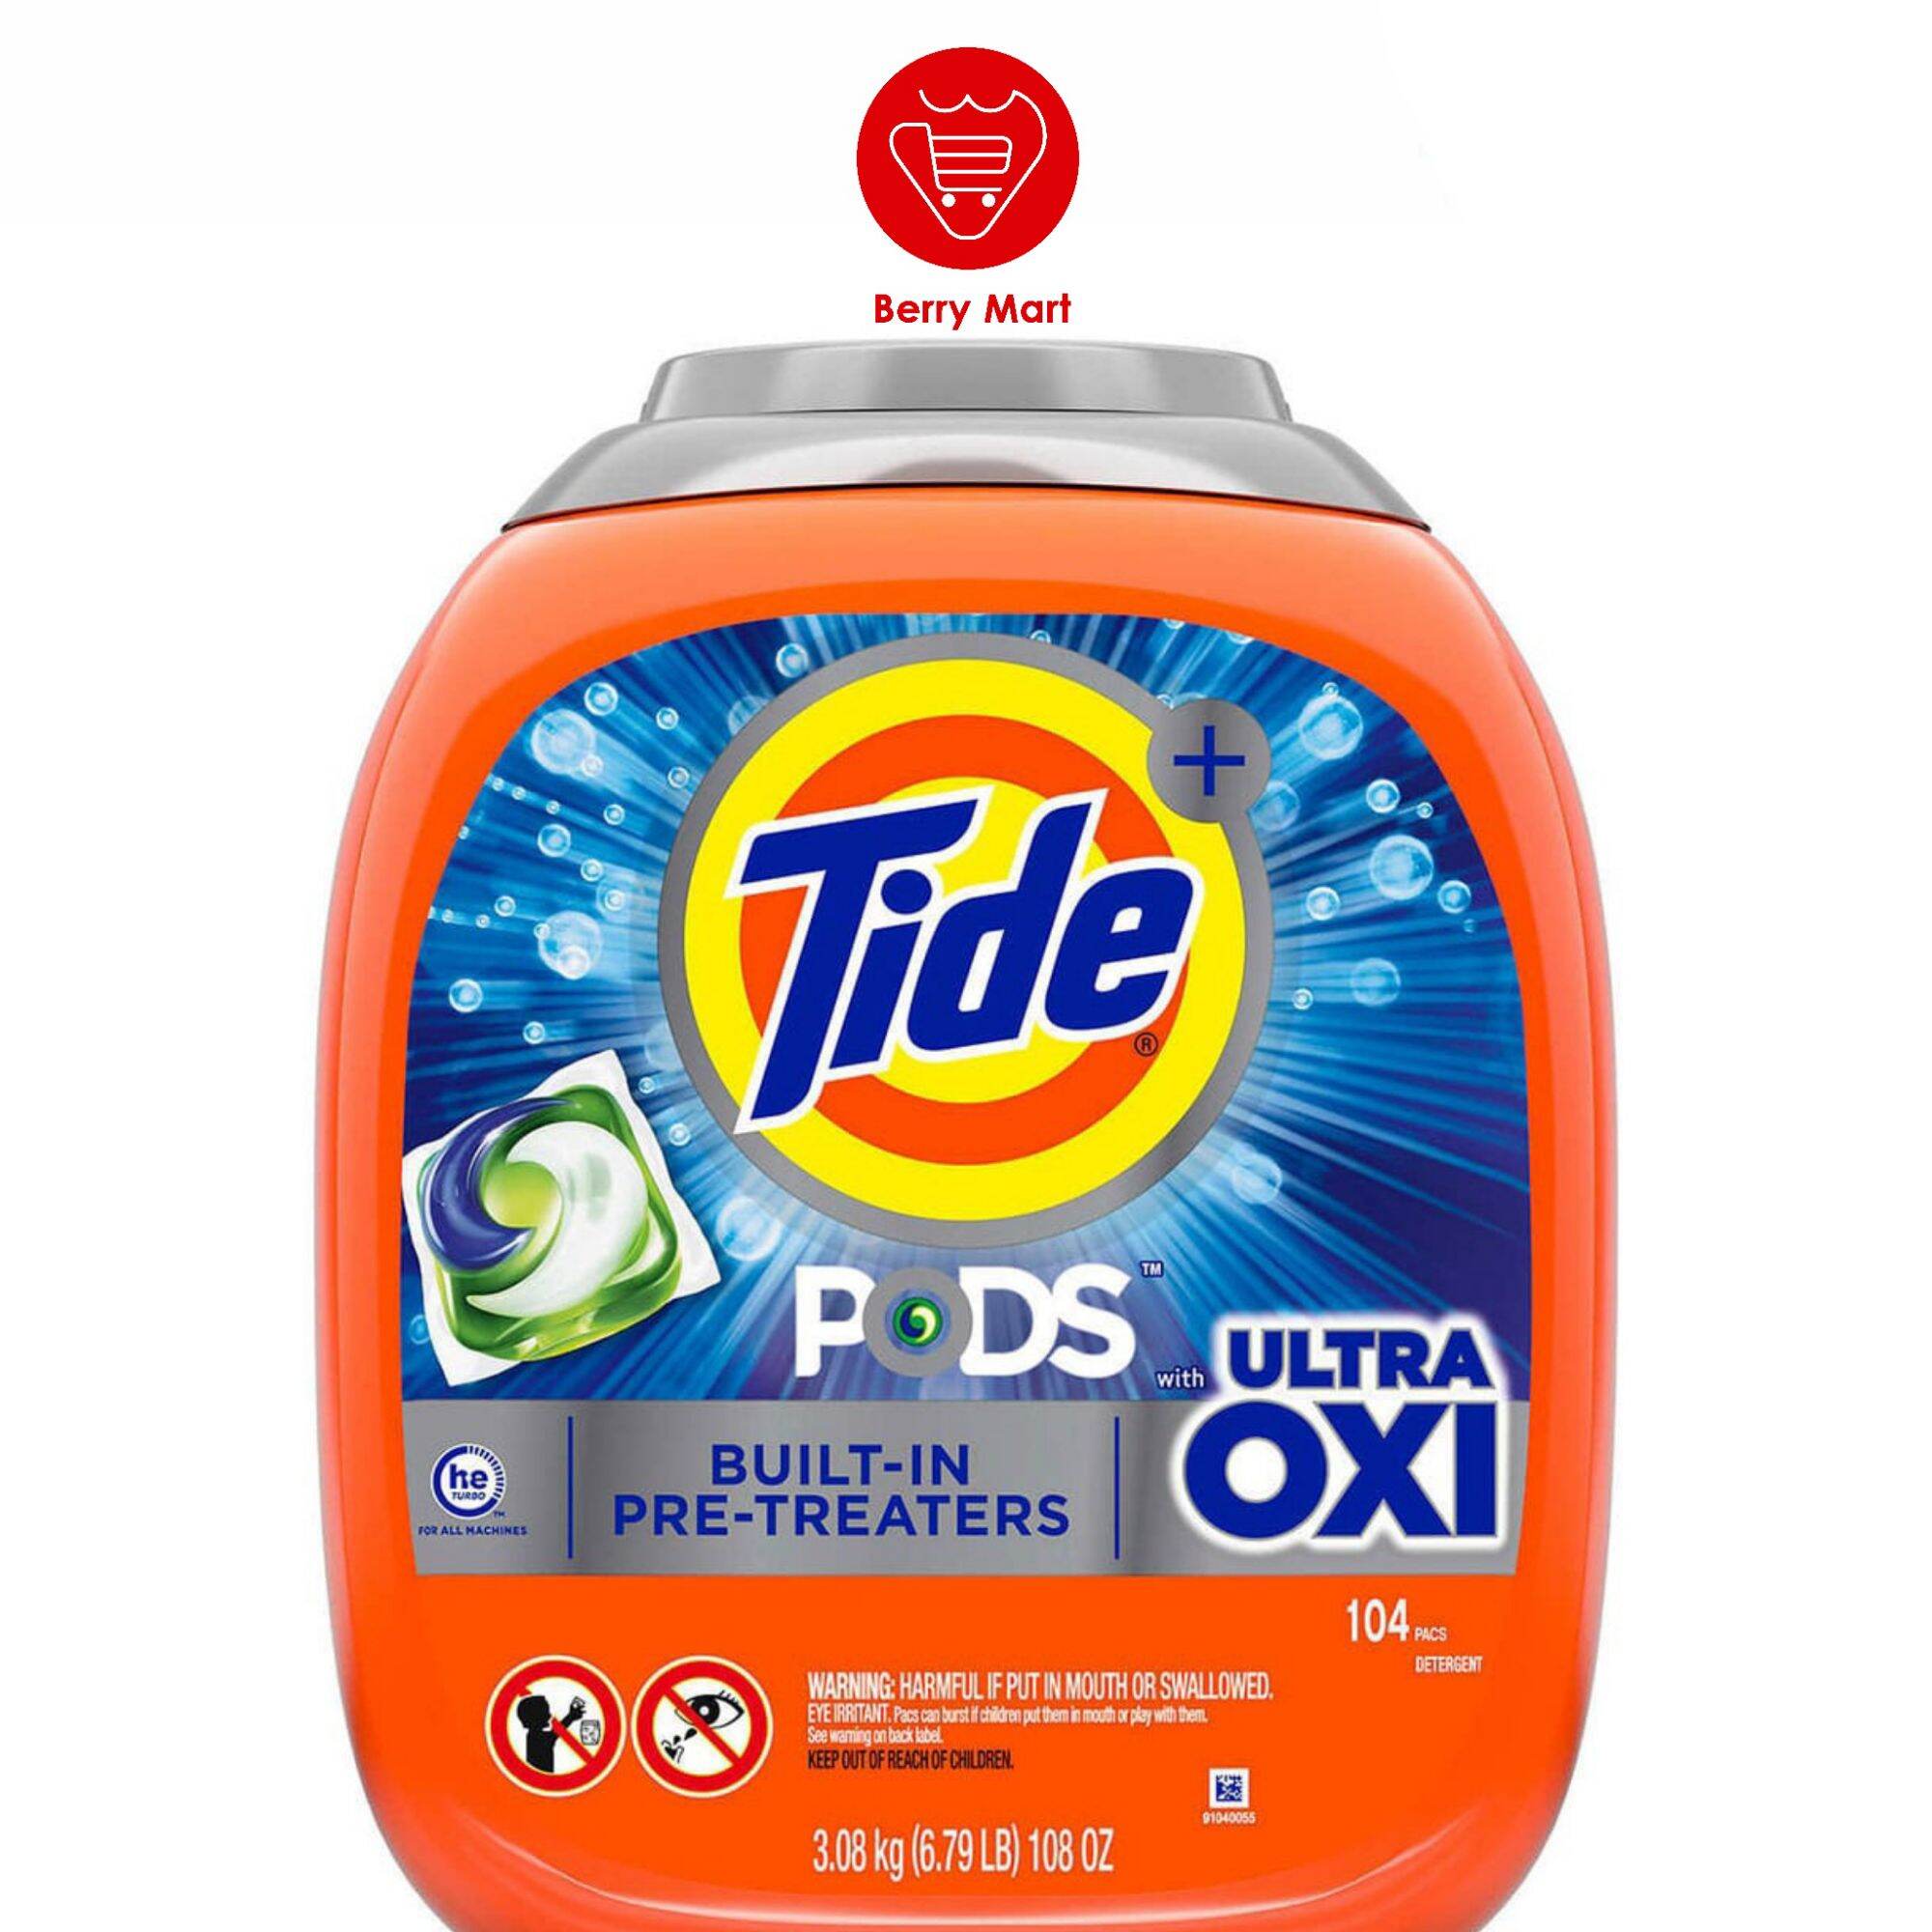 Viên giặt Tide ultra oxi 104 viên nhâp khẩu chính hãng từ Mỹ Viên giặt